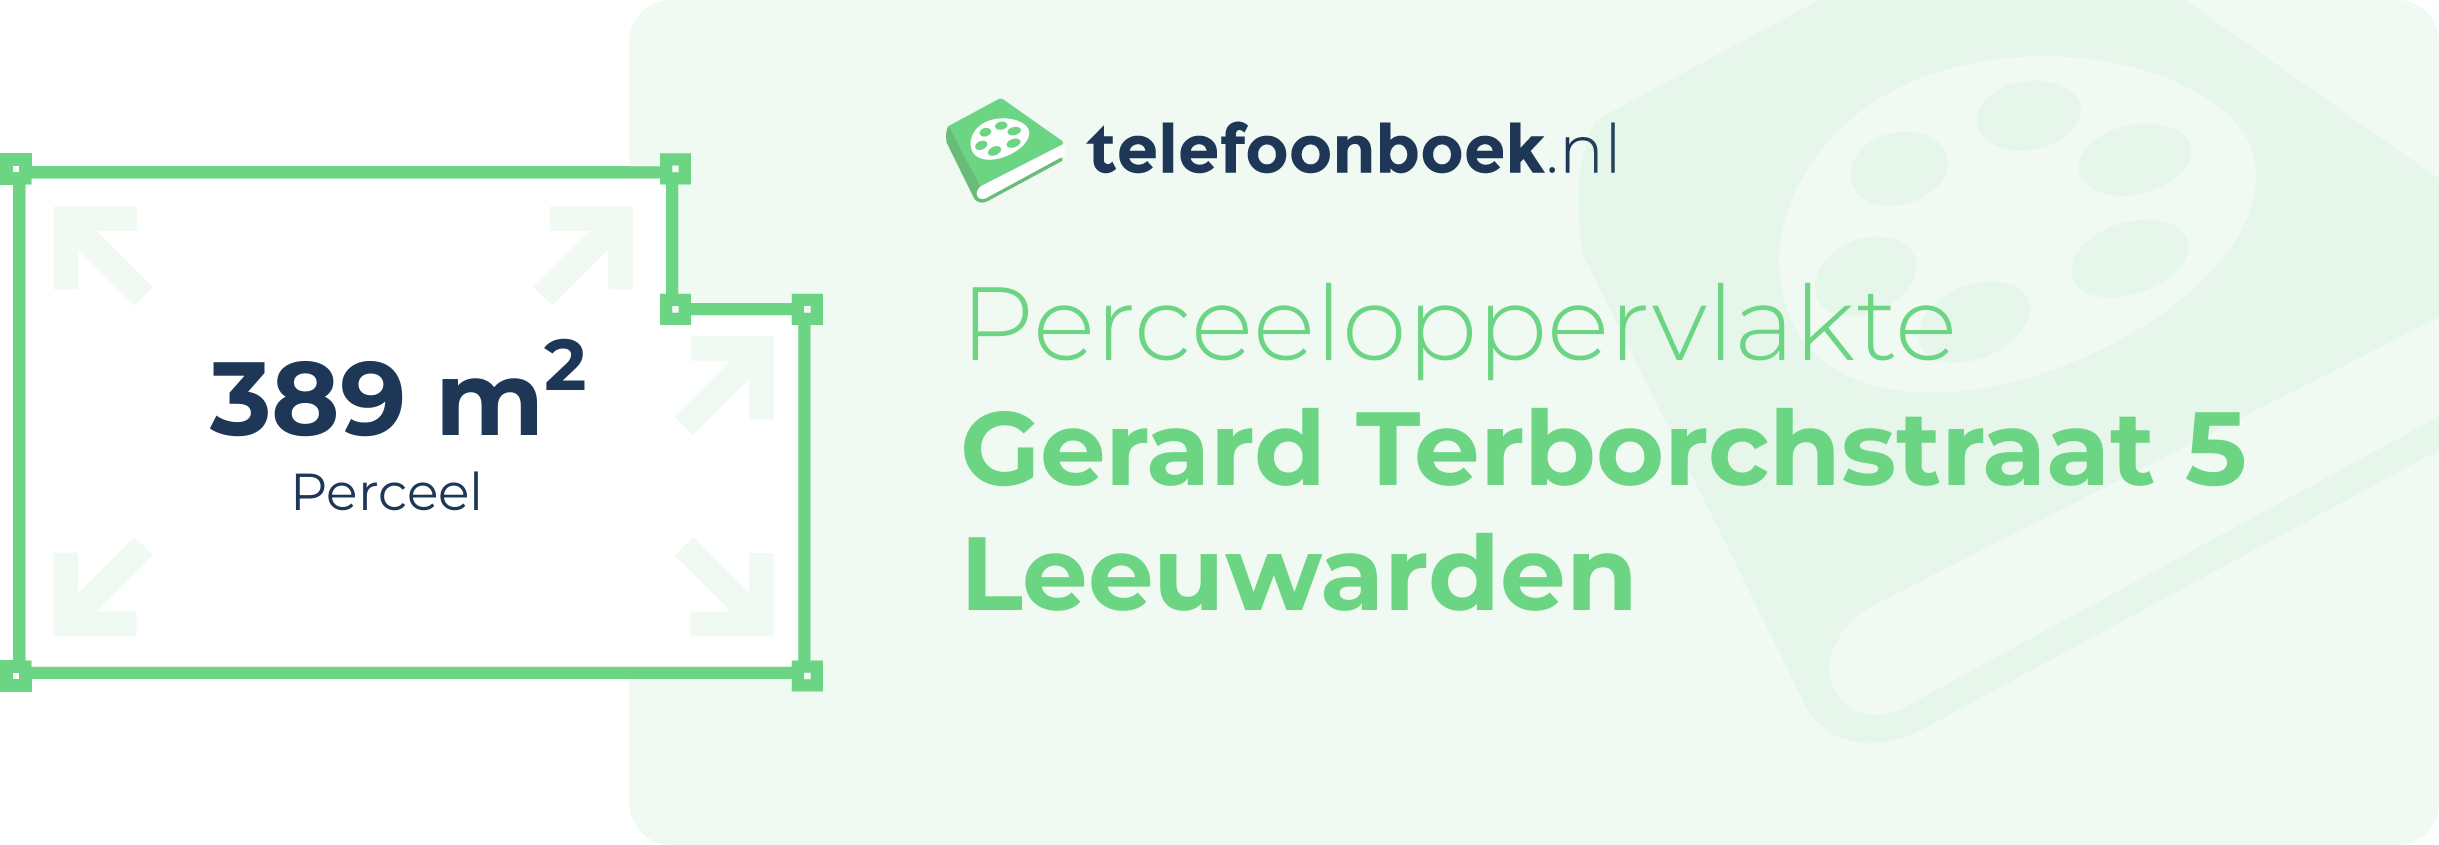 Perceeloppervlakte Gerard Terborchstraat 5 Leeuwarden